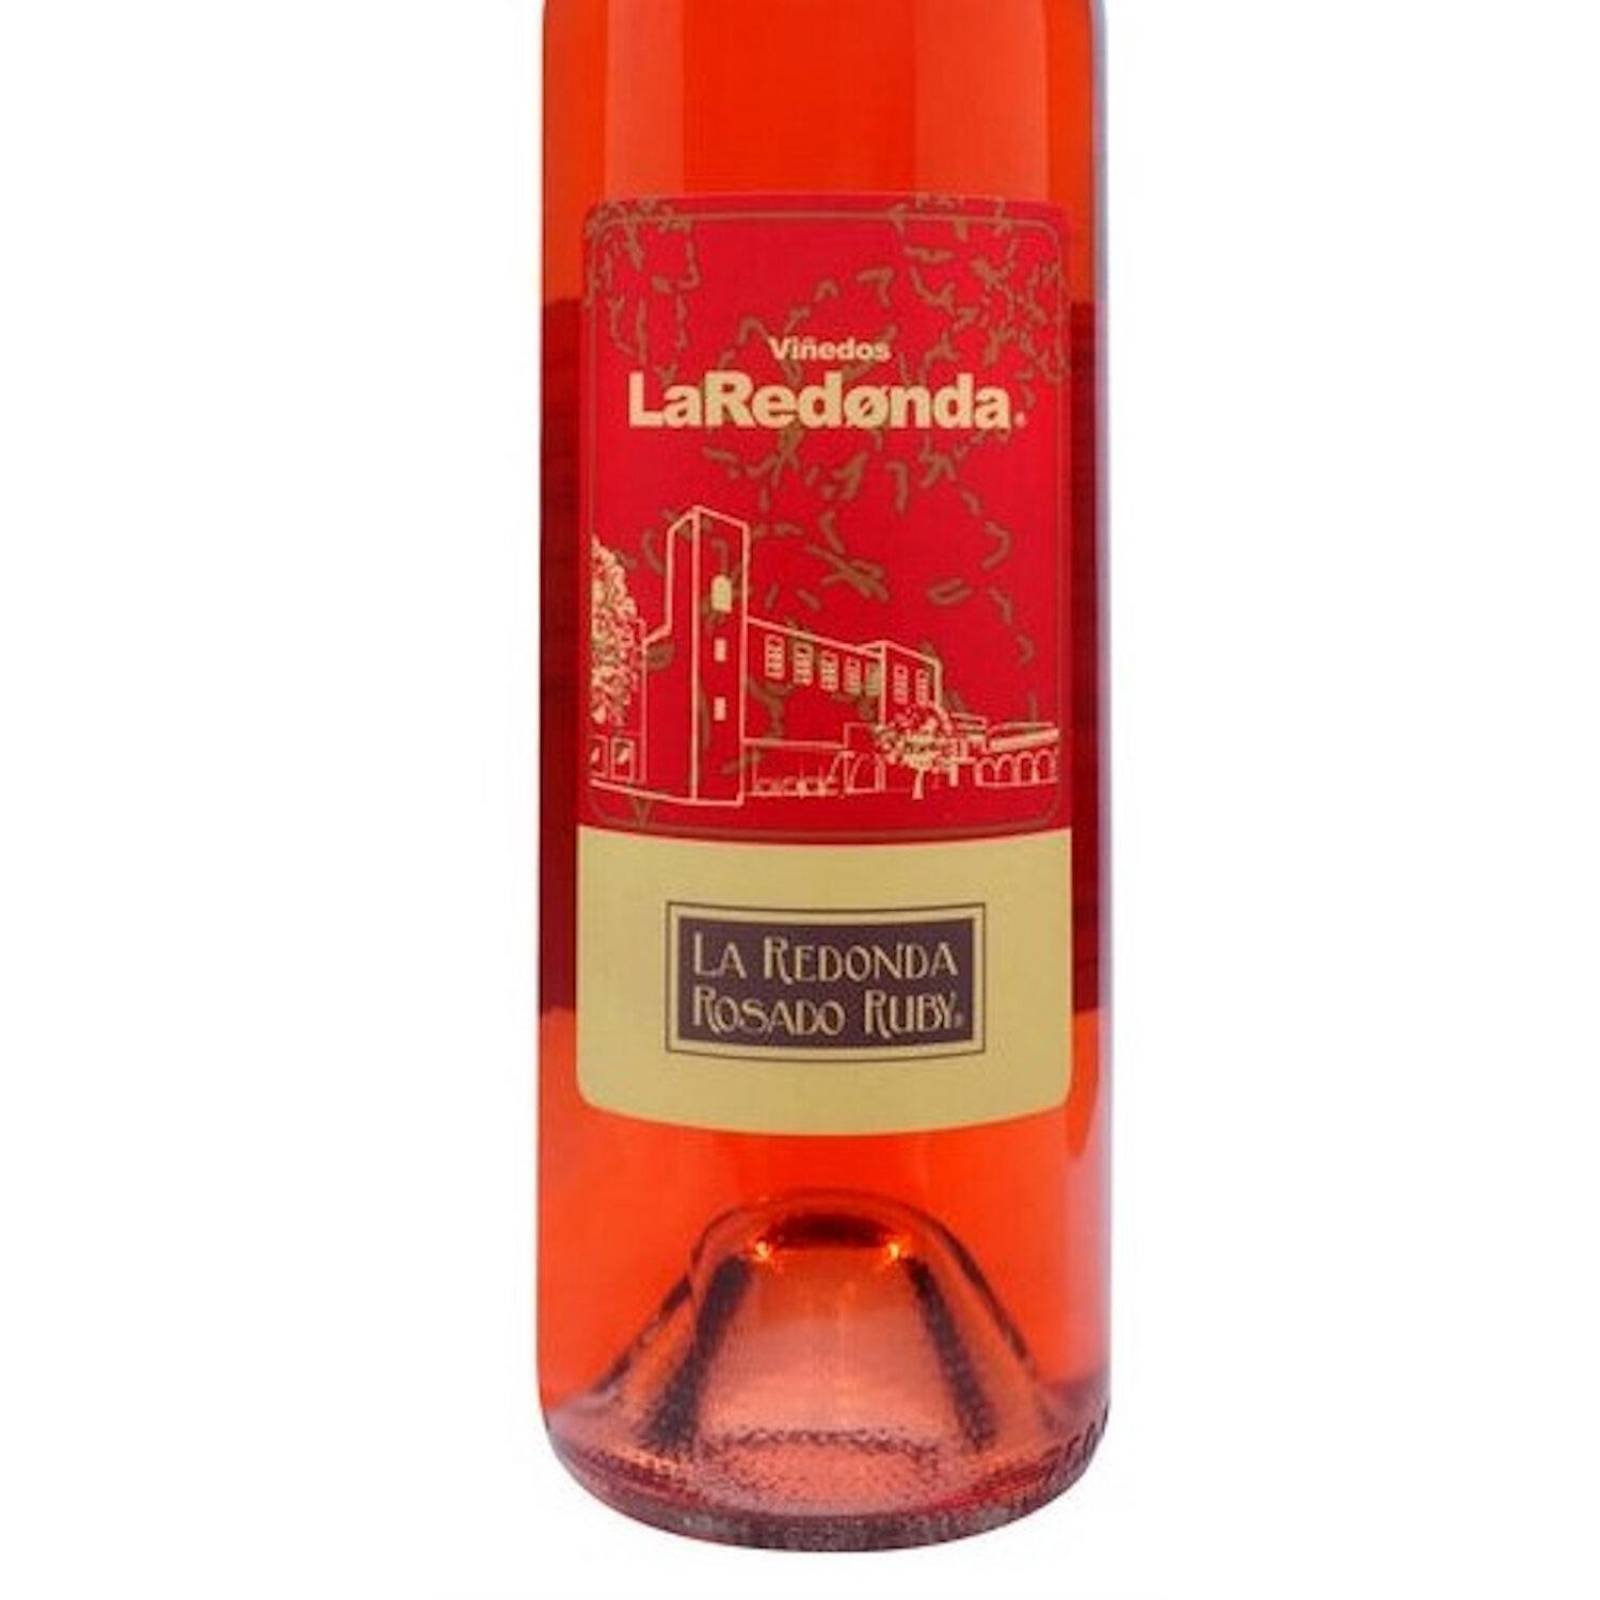 La Redonda Tinto Ruby 750 ml – Viñedos La Redonda